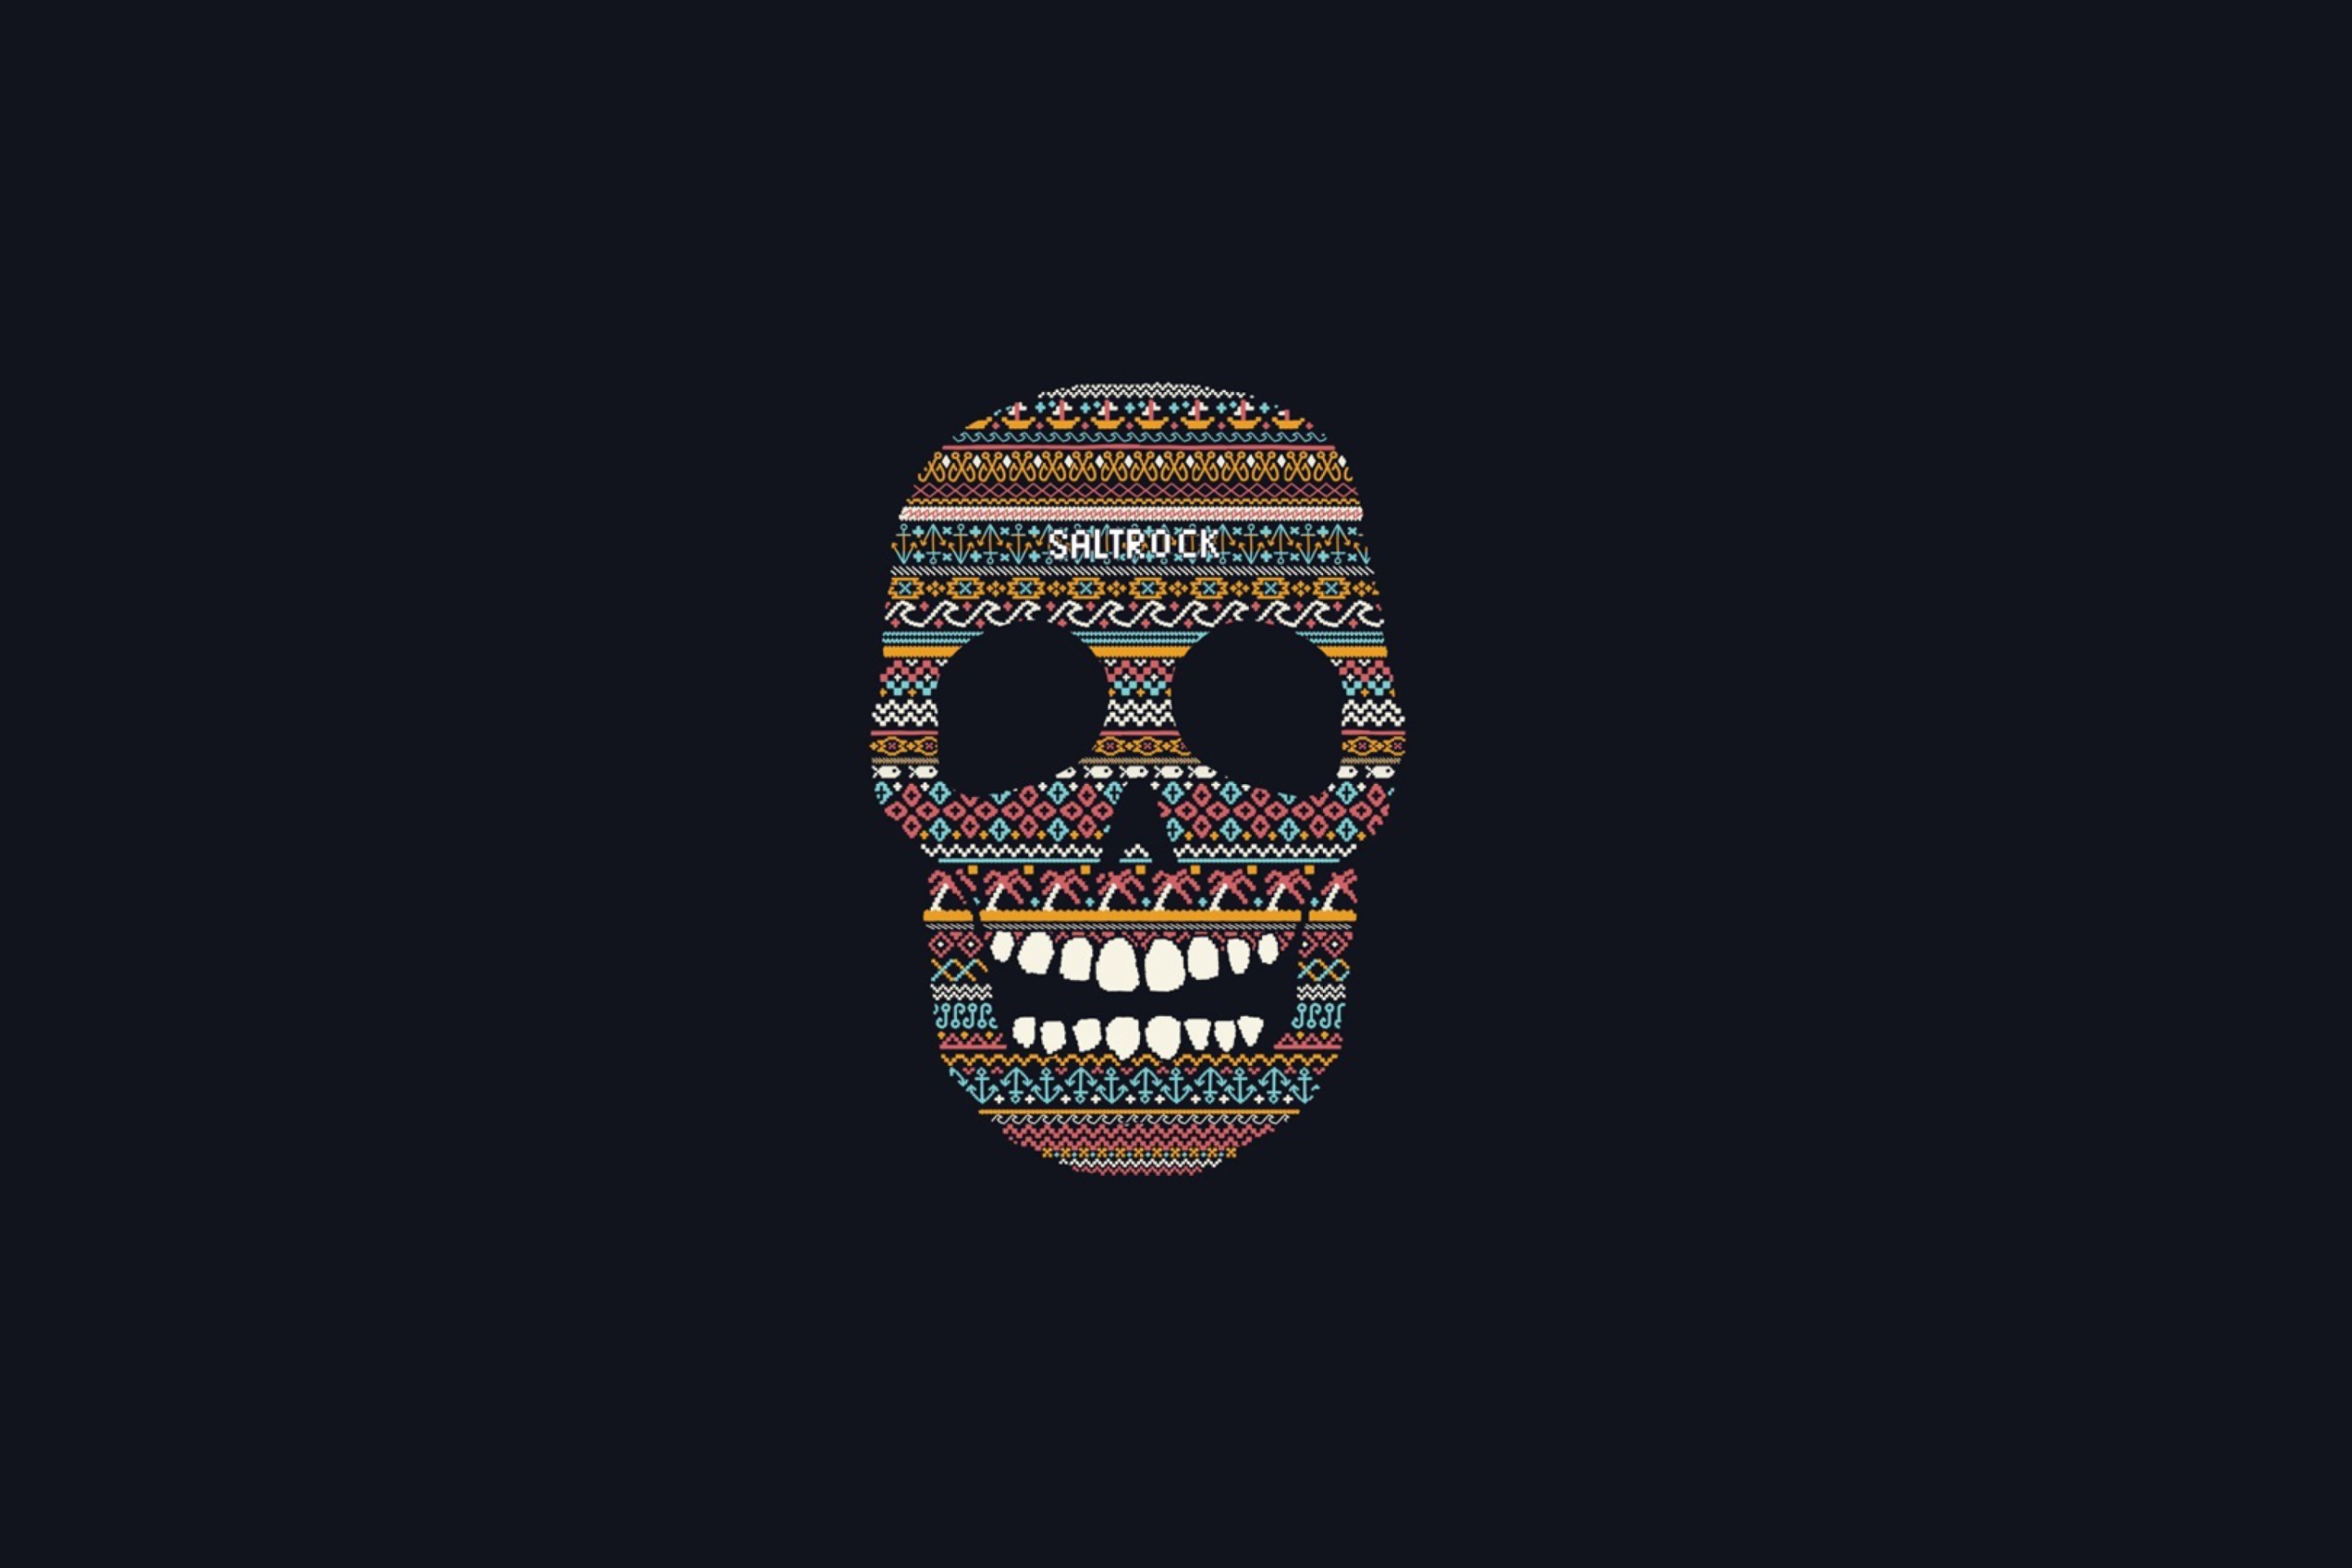 Das Funny Skull Wallpaper 2880x1920